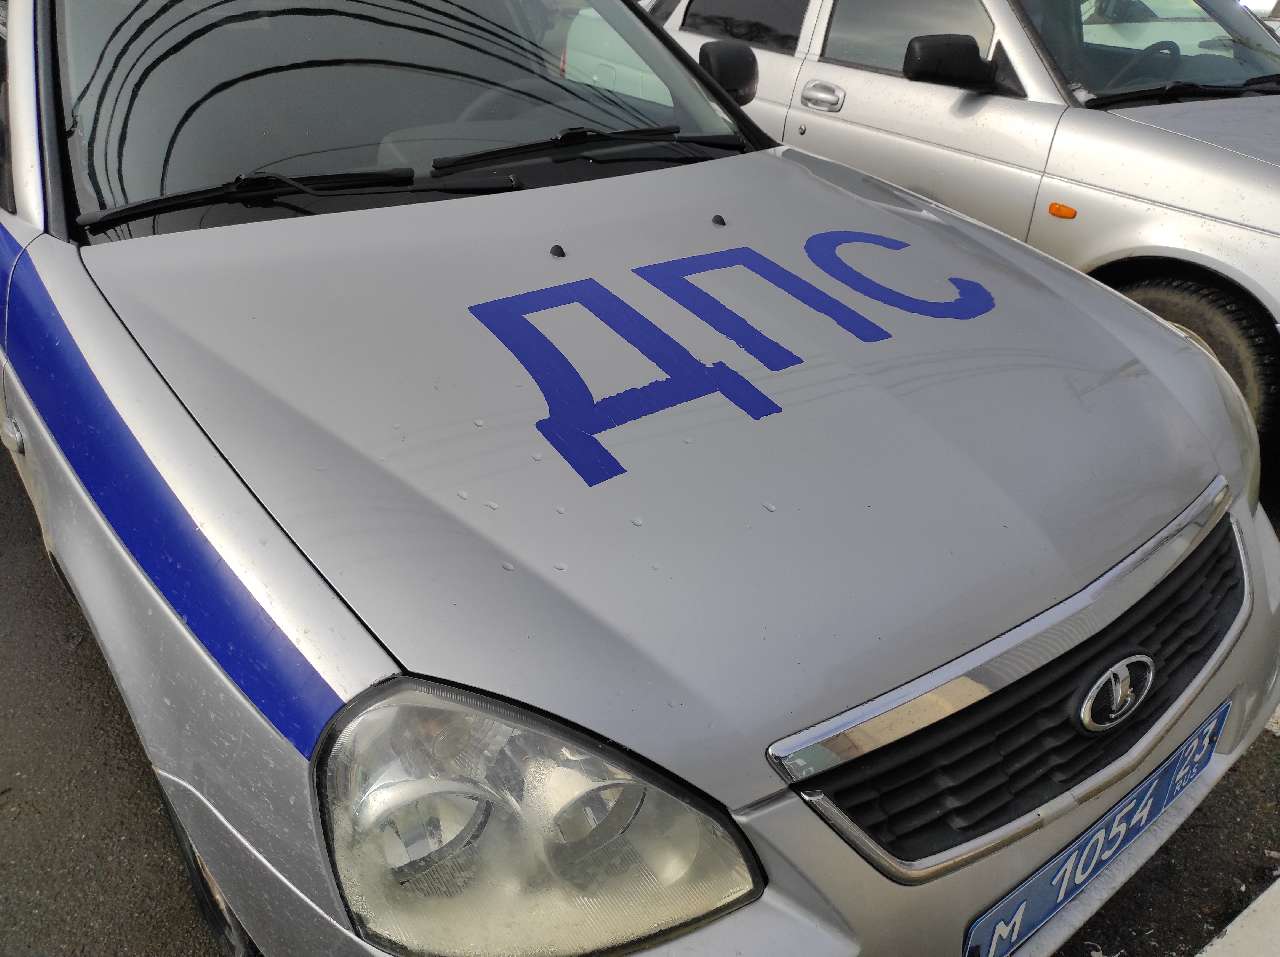  За незаконную деятельность в Армавире арестованы 2 машины такси 